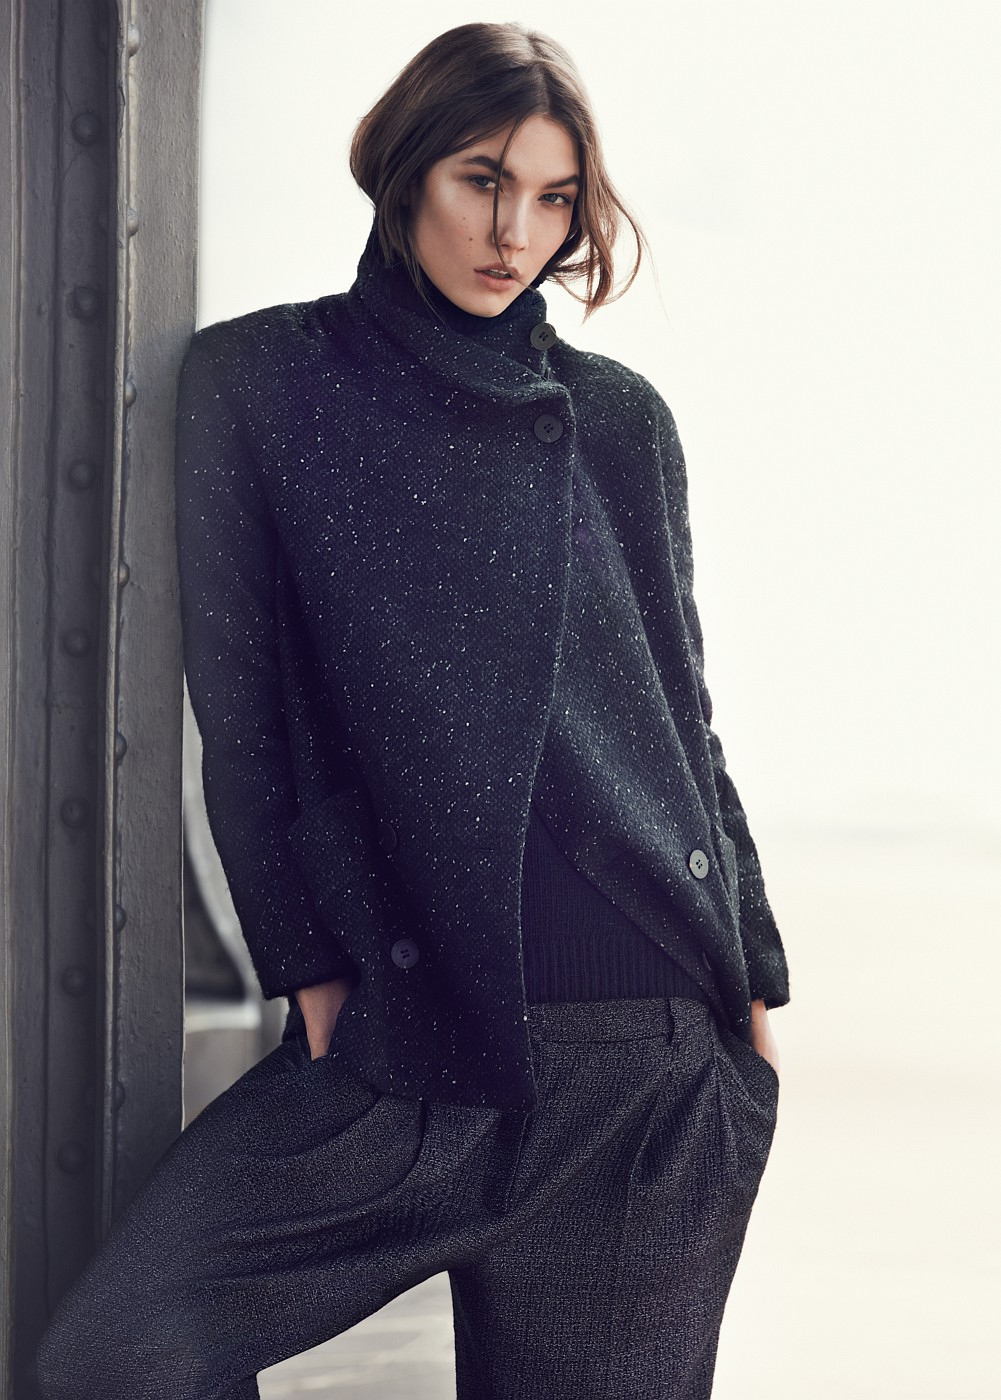 People 1001x1400 Karlie Kloss women model looking at viewer black coat studio indoors fashion